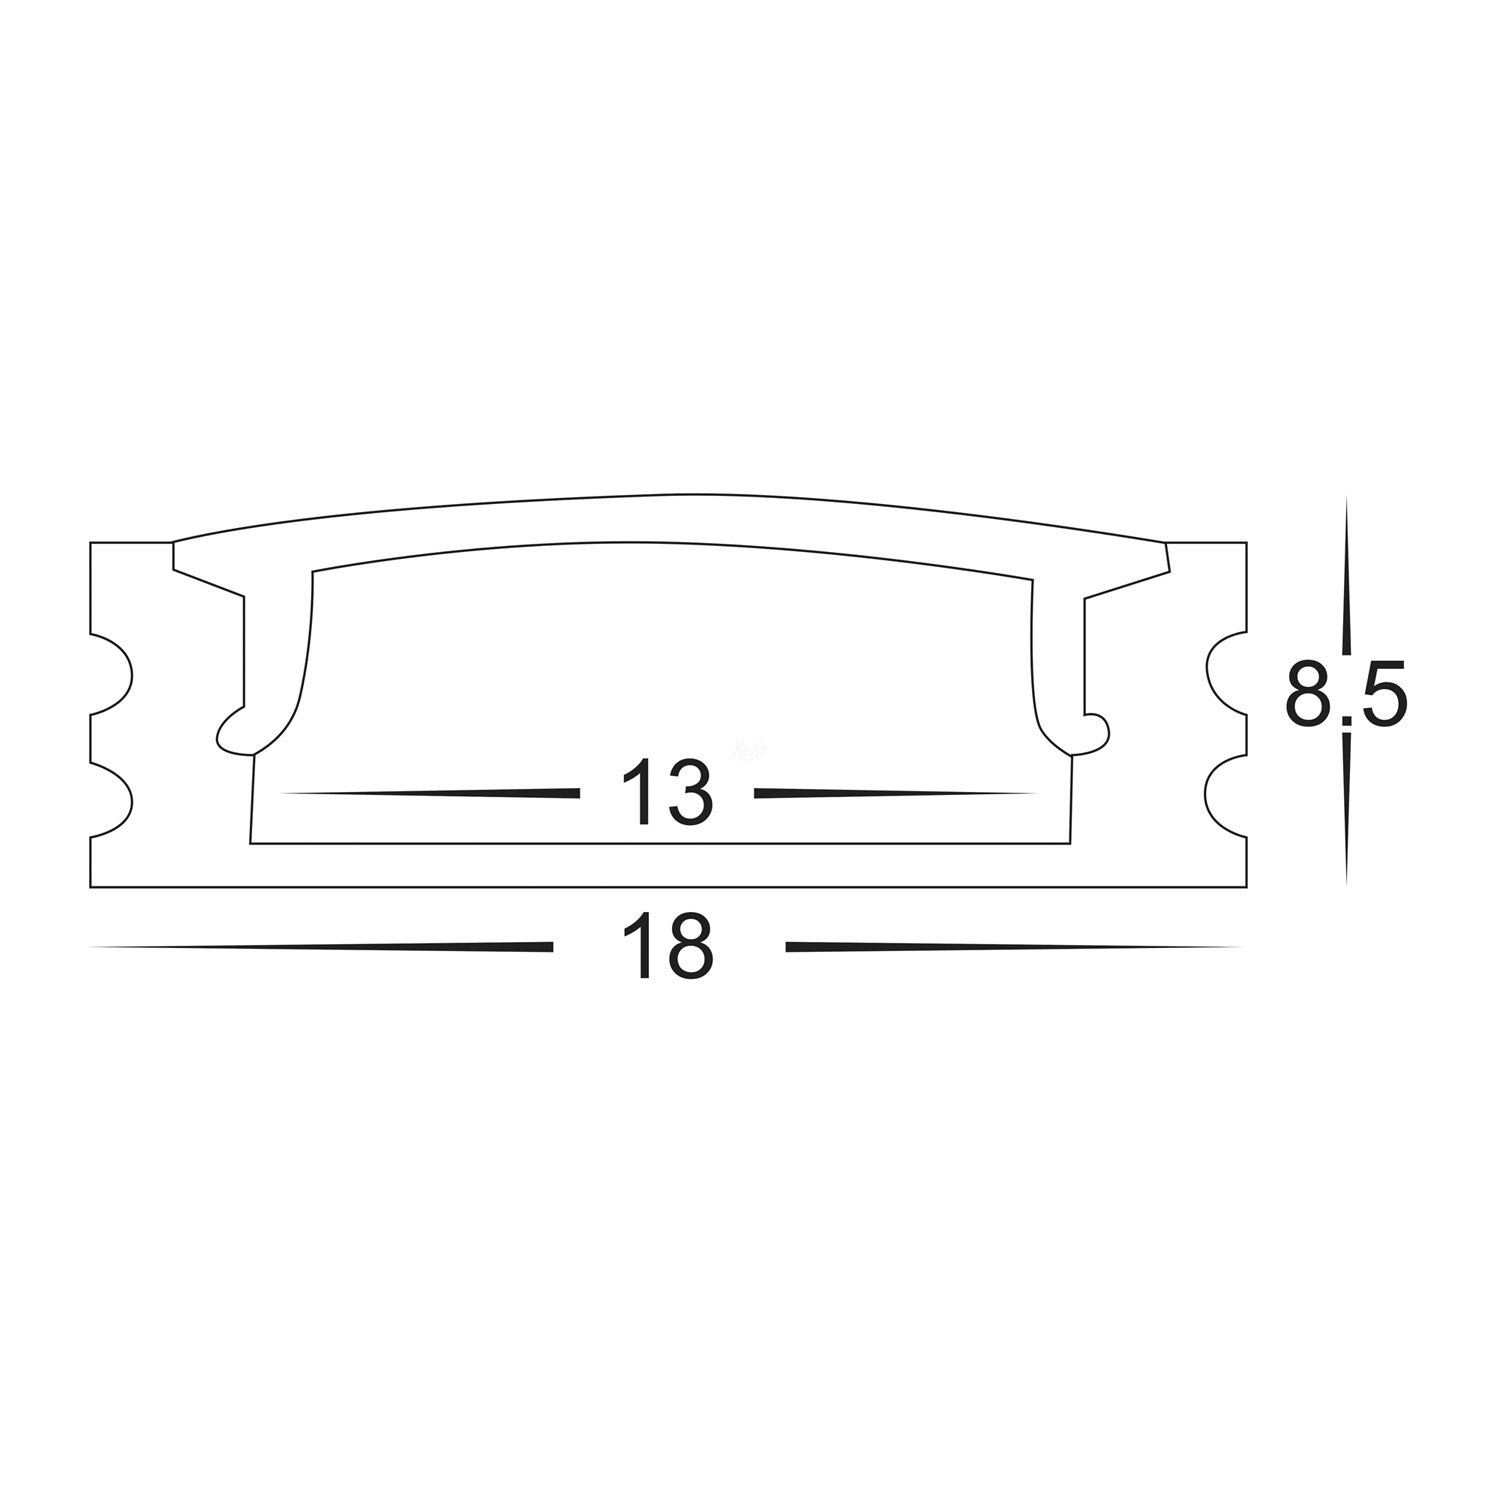 HV9693-1707-BLK - Black Shallow Square Aluminium Profile